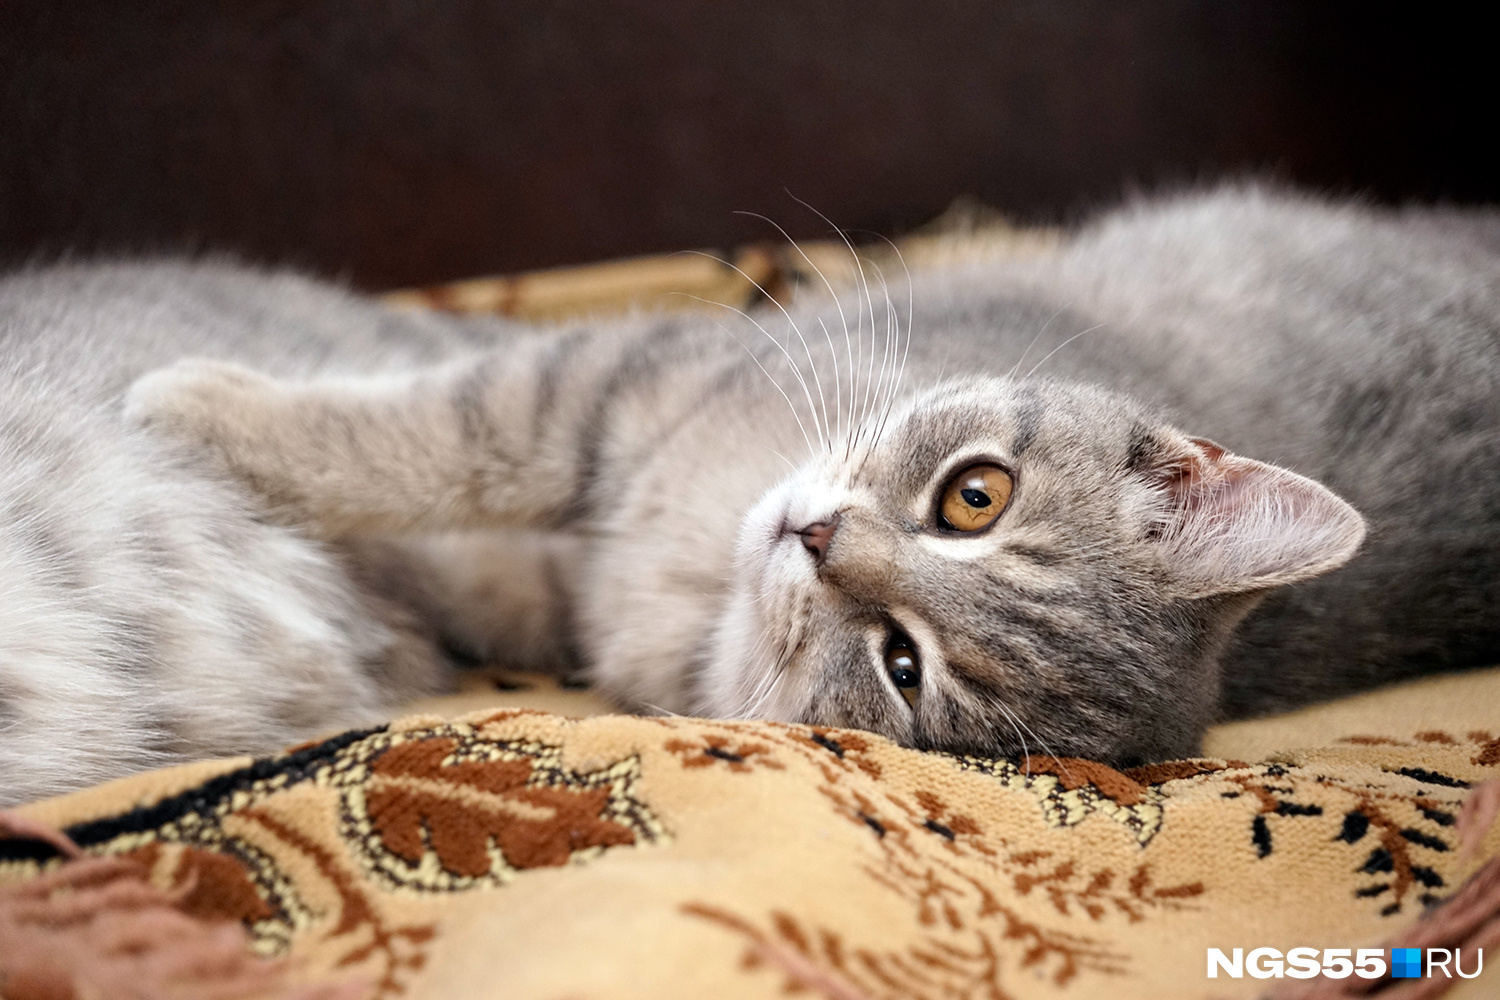 А вот психологи считают, что котики, лежащие рядышком, создают ощущение уюта и комфорта